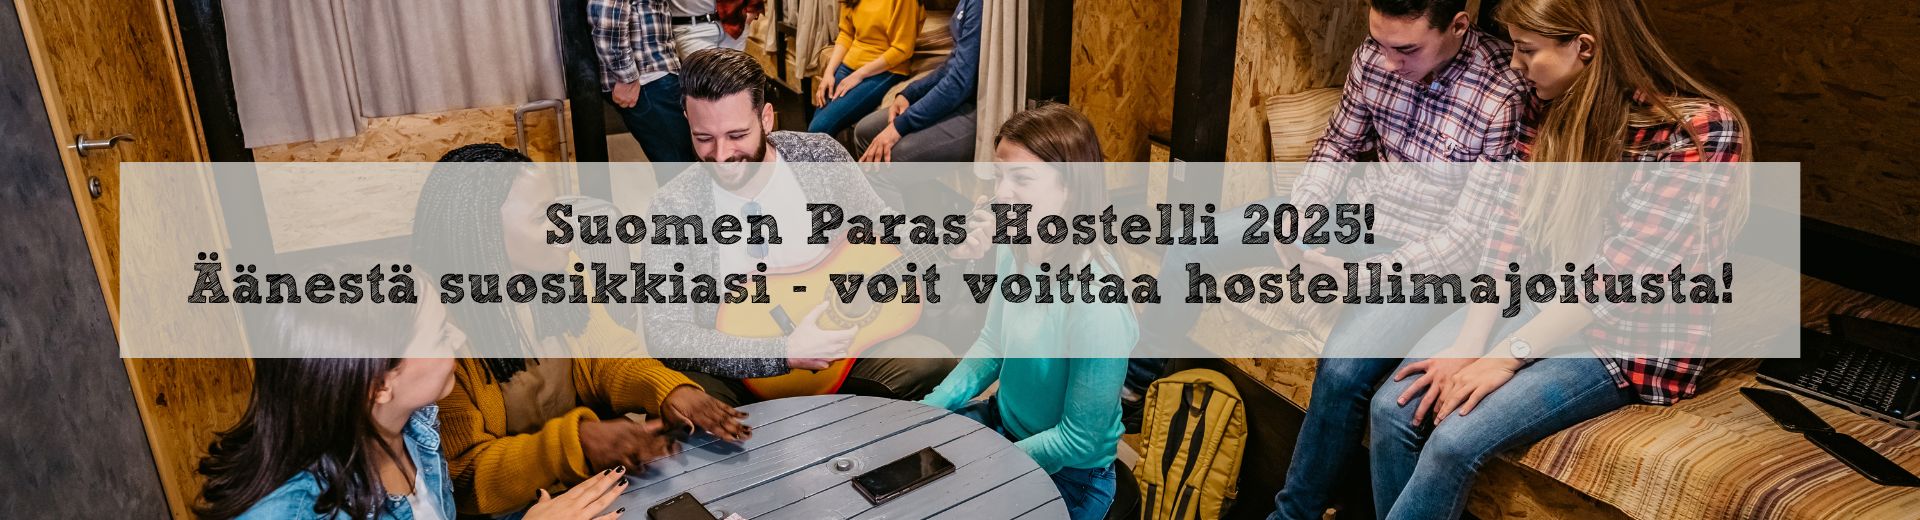 Suomen Paras Hostelli 2025, kuvituskuva, yhteisöllisyys